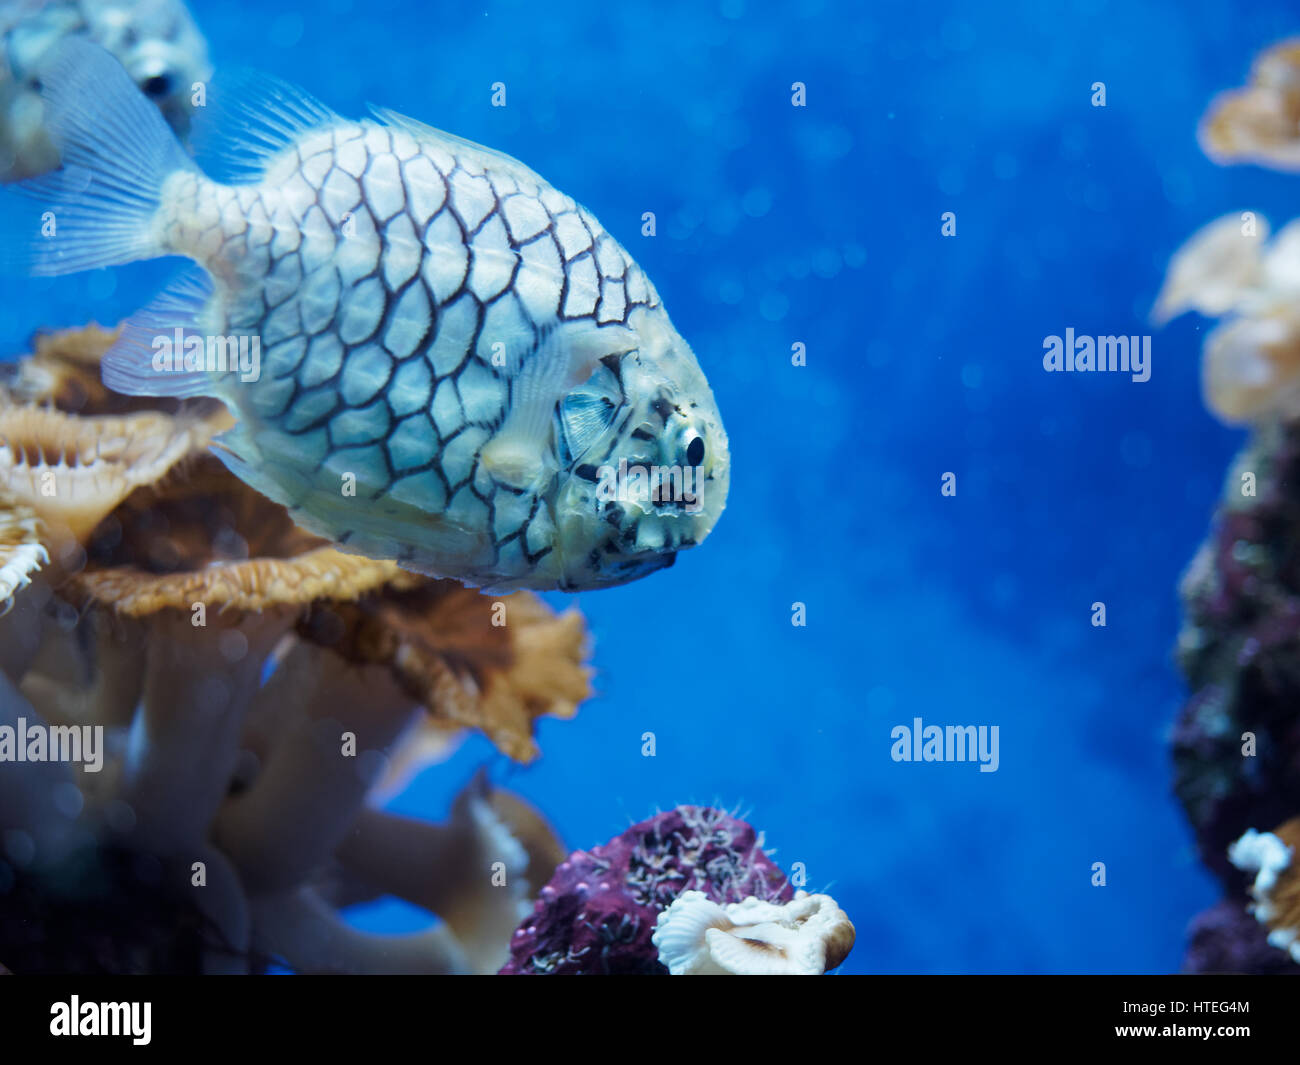 Australian Pineapplefish Cleidopus gloriamaris in Monaco aquarium Stock Photo